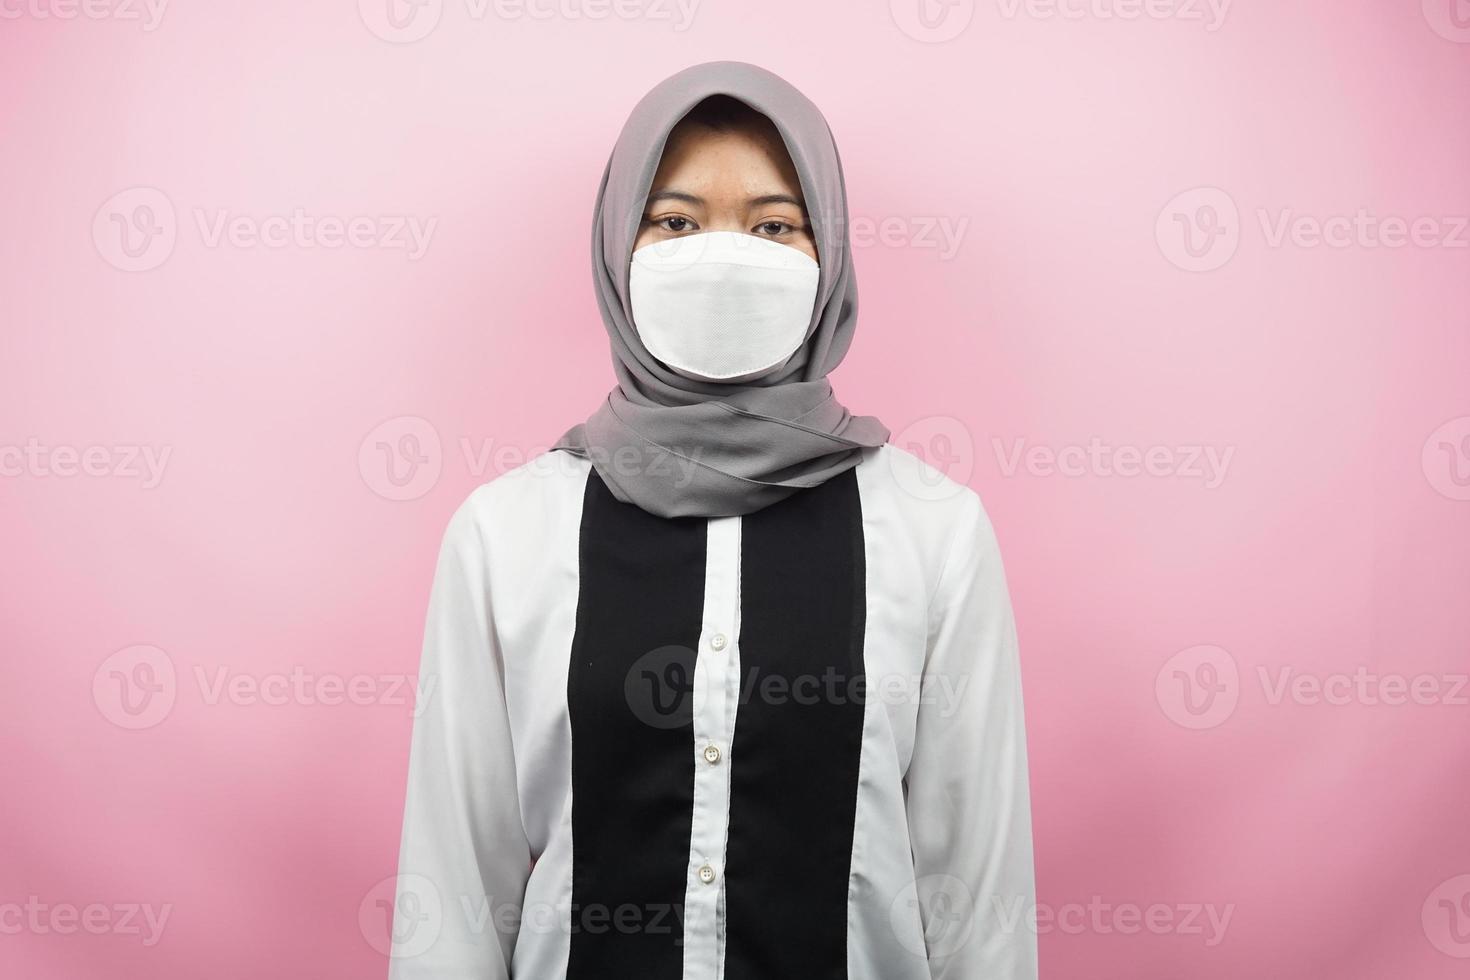 femme musulmane portant des masques blancs, mouvement anti-virus corona, mouvement anti-covid-19, mouvement de santé utilisant des masques, isolé sur fond rose photo